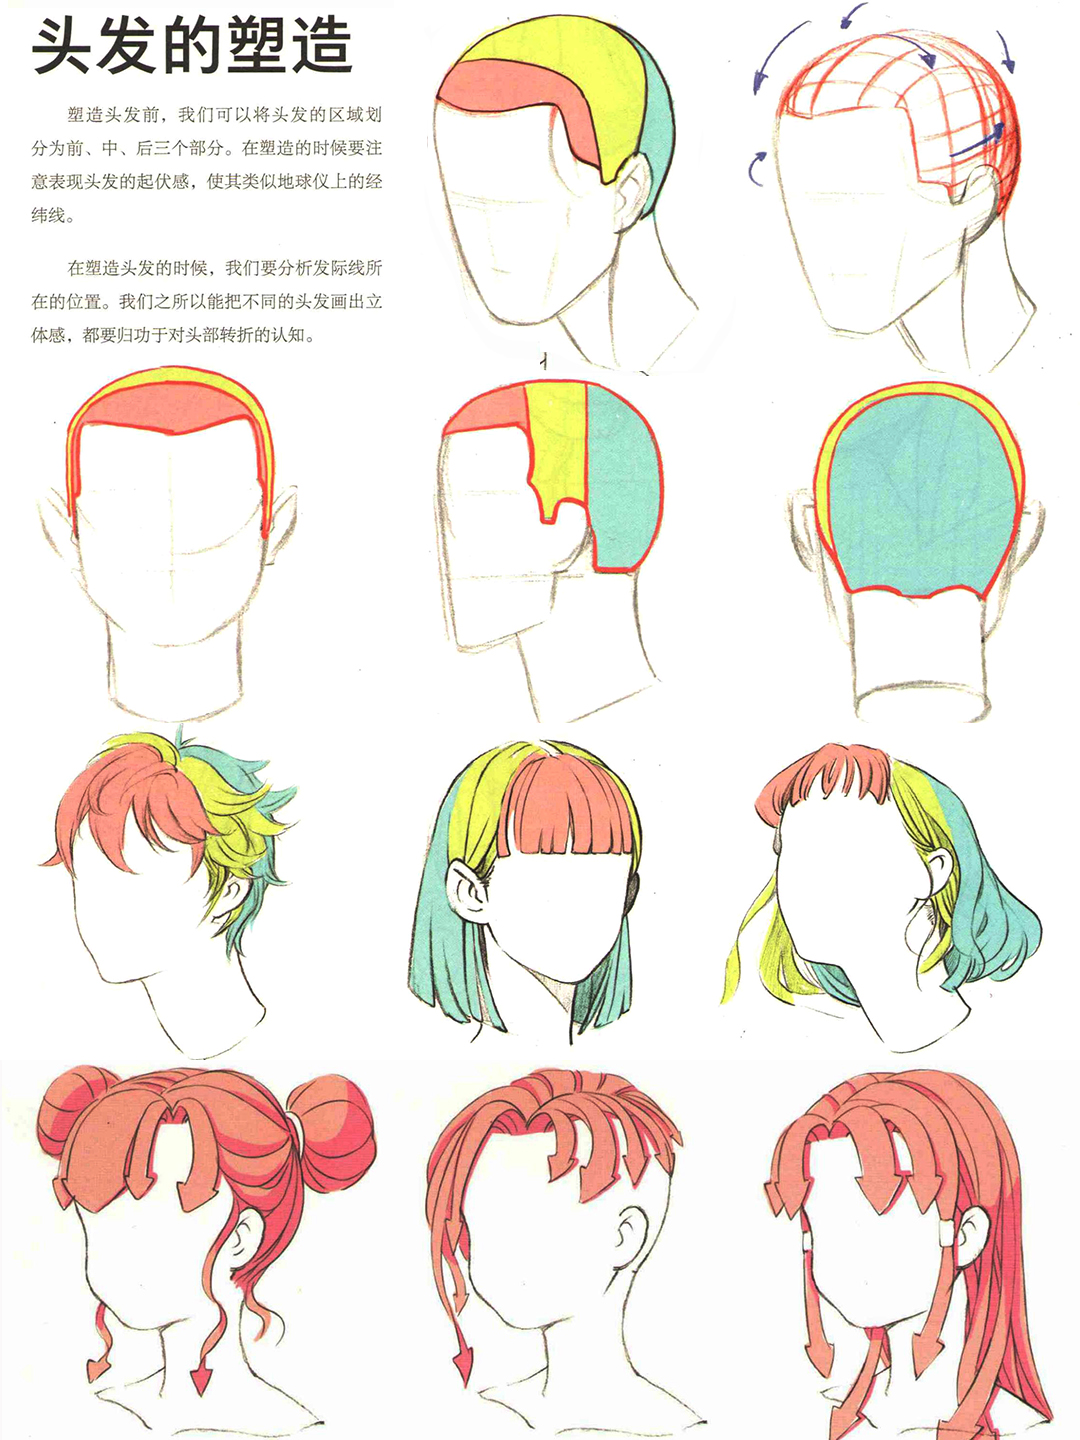 漫画角色头发的绘制技法 part 01 头发绘制基础知识 - 知乎